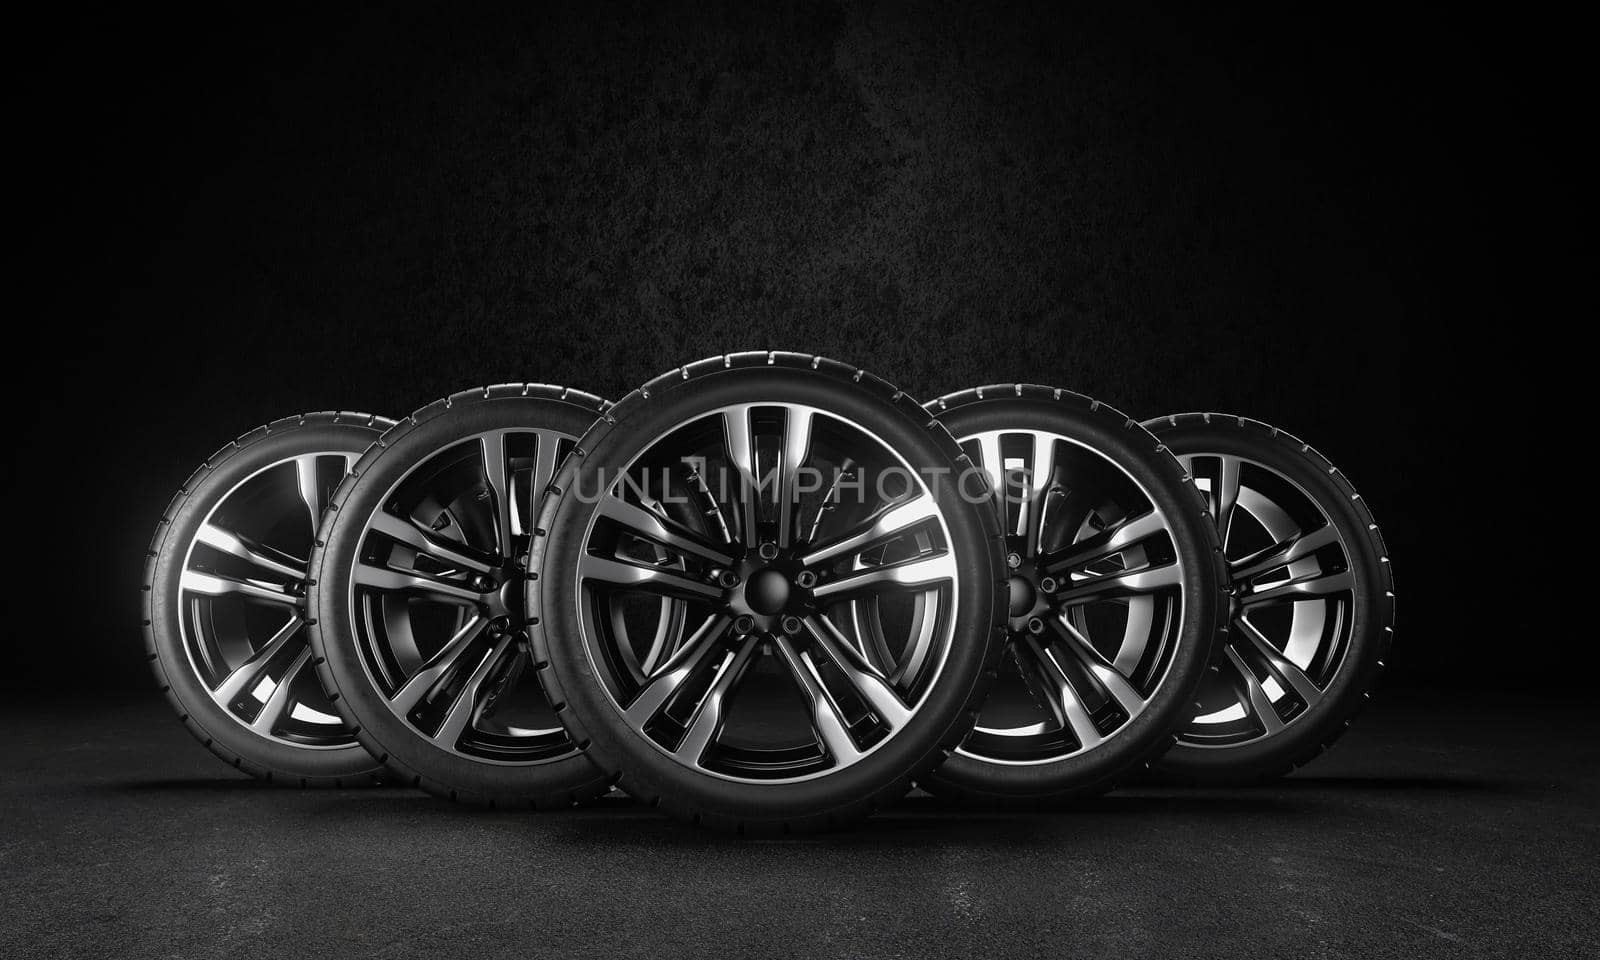 Five car wheels on asphalt and black background. 3D rendering illustration.